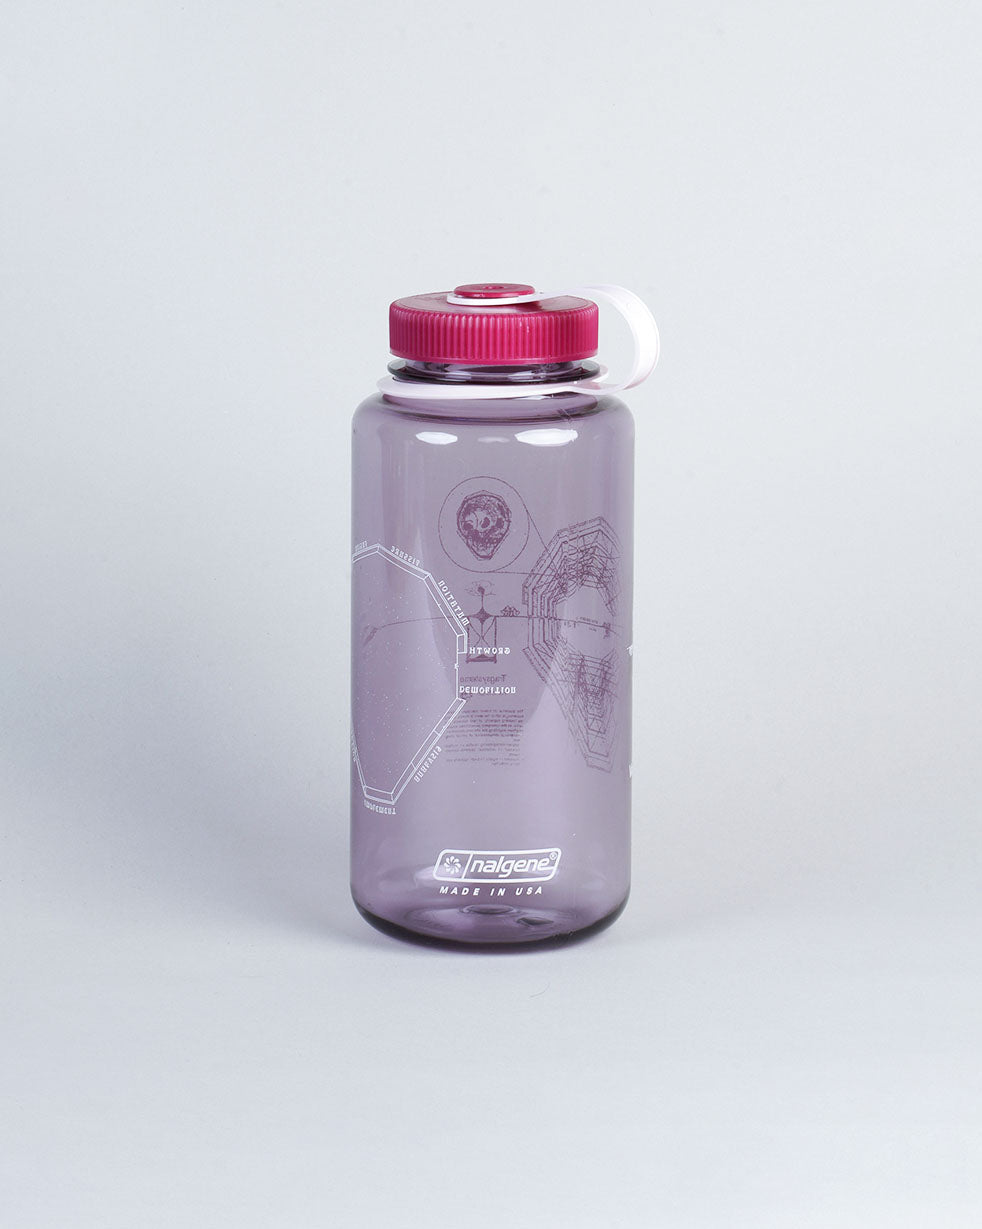 Varyer + Asrai Nalgene Bottle